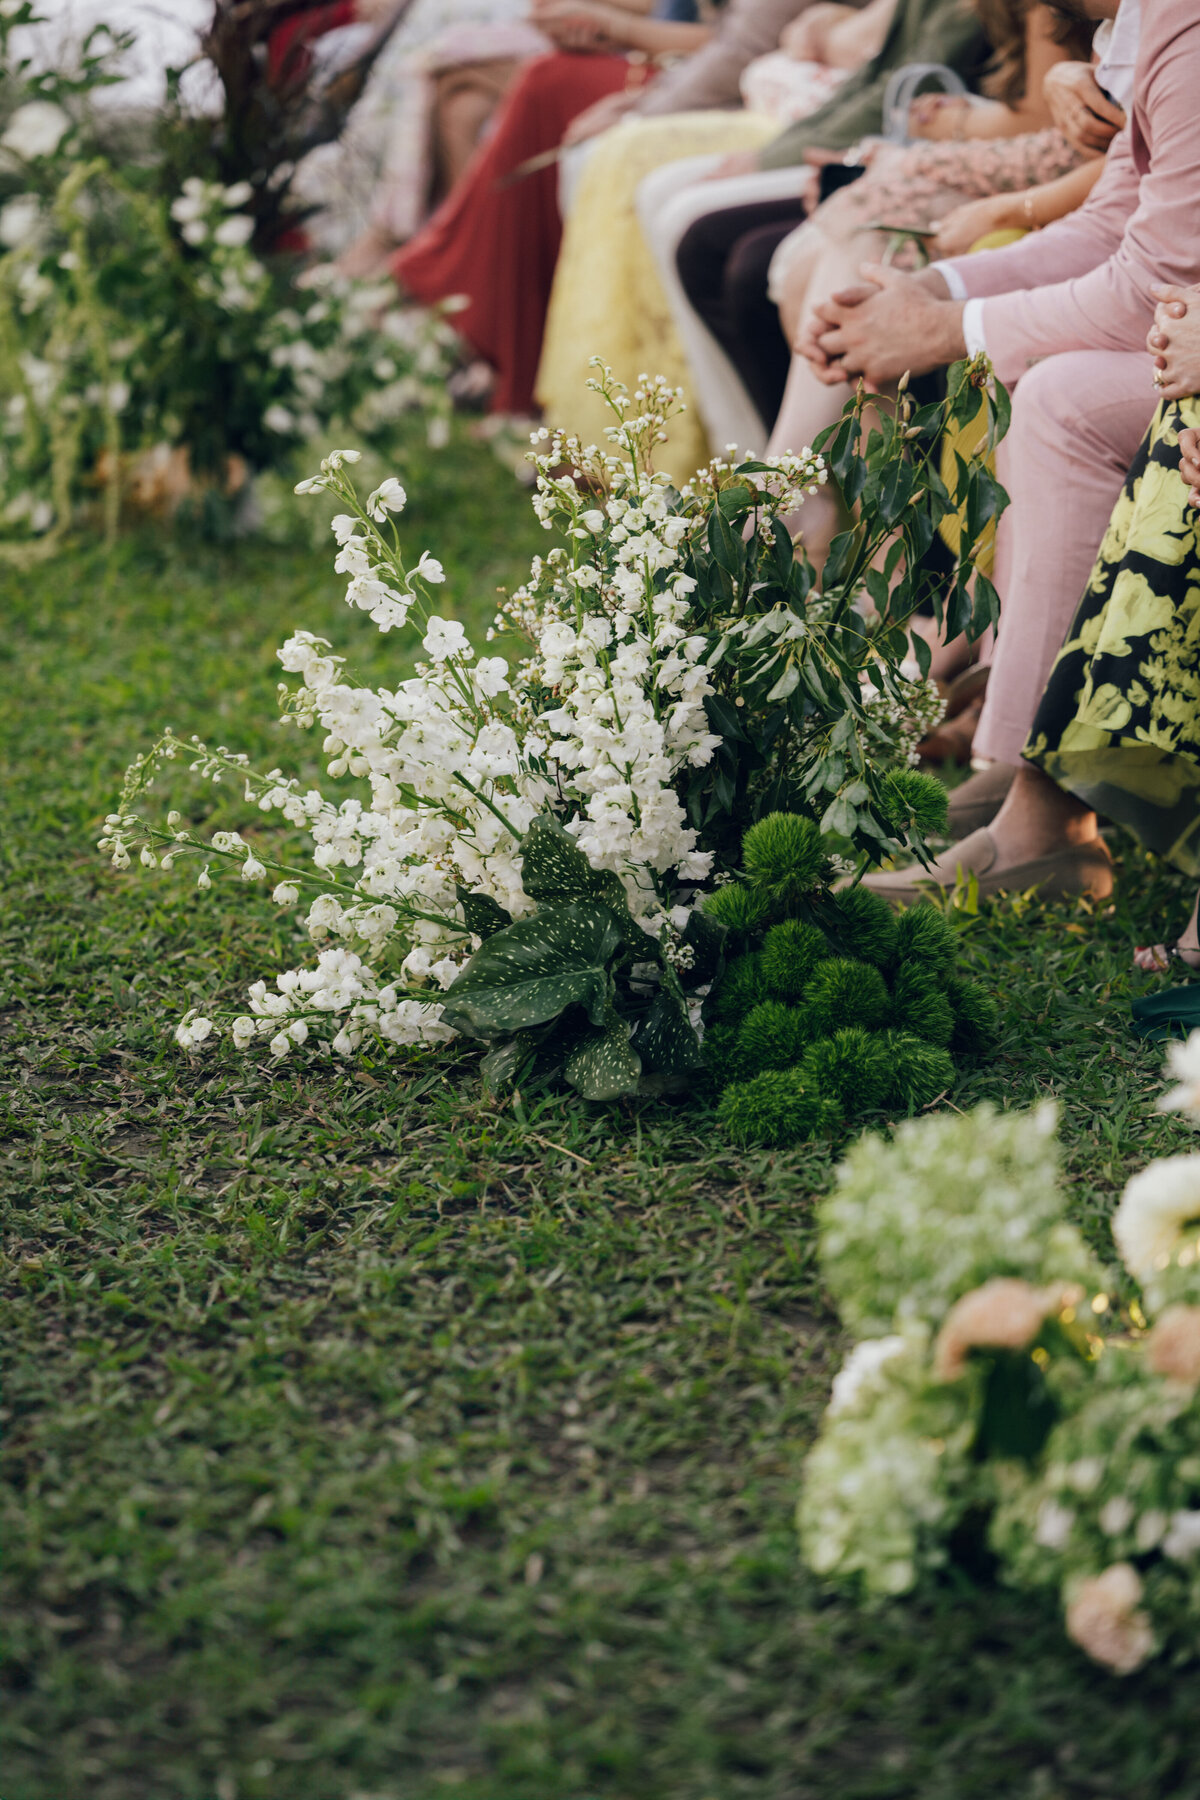 fairchild-botanical-garden-anti-bride-wedding-miami-florida-216